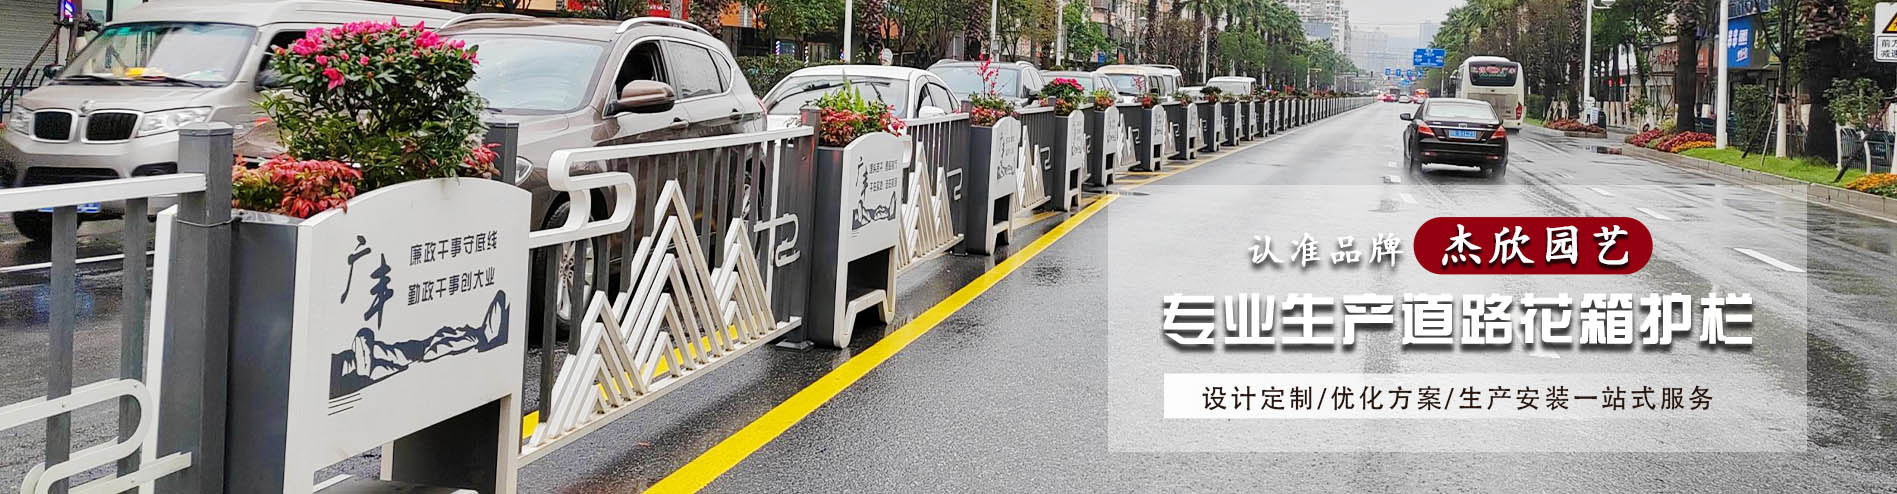 市政道路隔离花箱护栏案例展示-双色球杀号-花箱优质制造商 - 道路隔离花箱案例